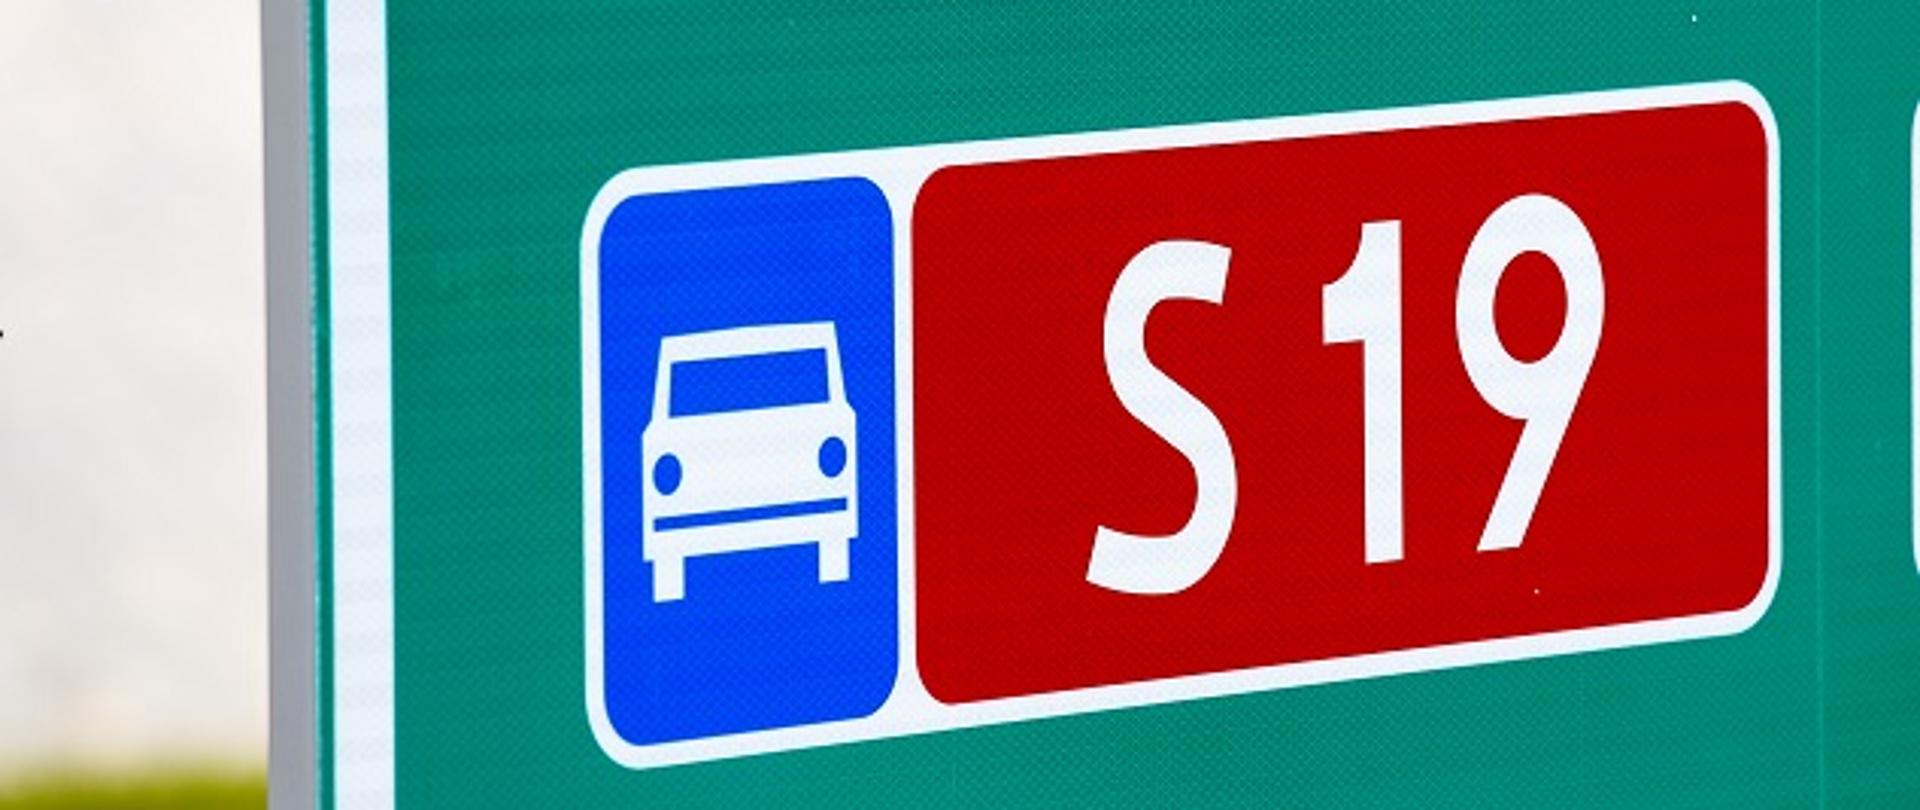 Znak informacyjny, oznaczający drogę ekspresową (białe auto od przodu na niebieskim tle) oraz czerwona tablica oznaczająca numer drogi ekspresowe (literka S i numer 19 na biało) 